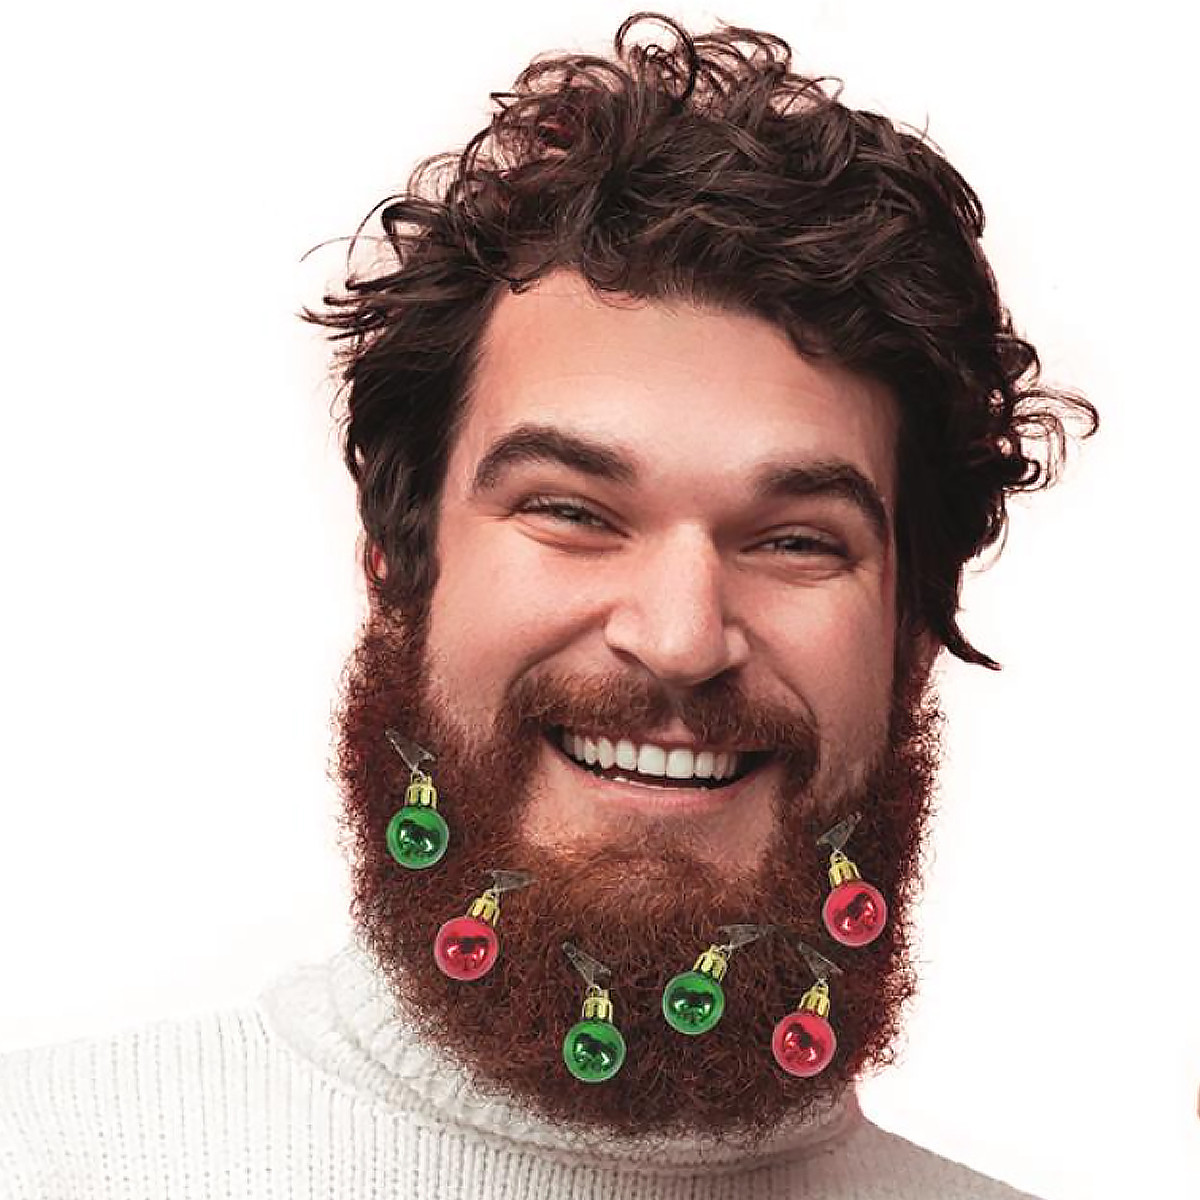 La barbe à paillettes, nouveau look pour les fêtes de Noël ?